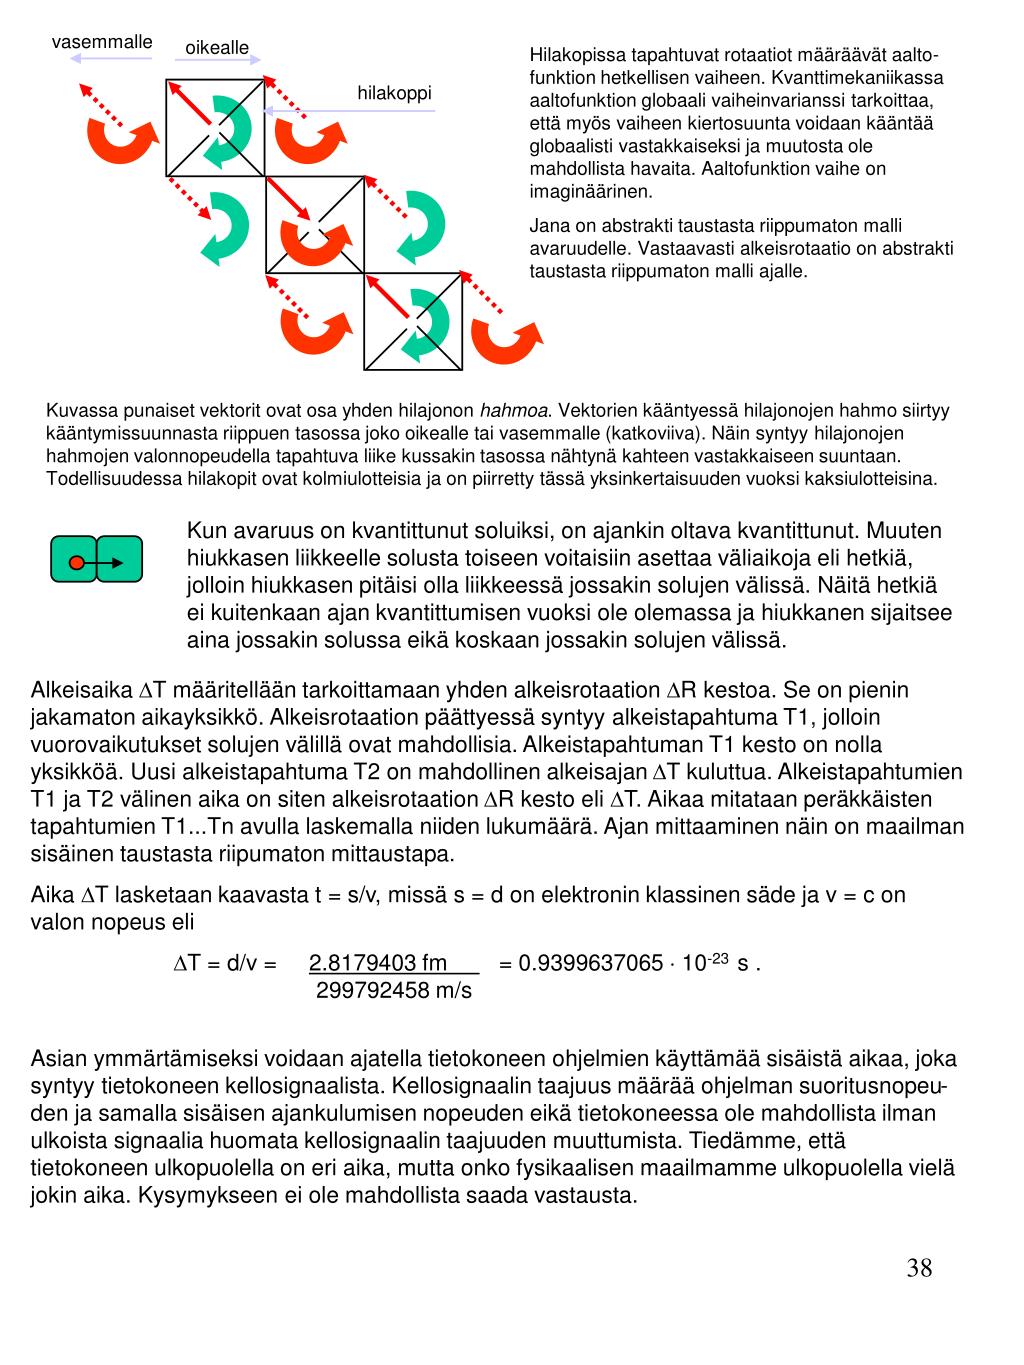 PPT - D-teoria Uusi kvanttimekaniikan tulkinta perustuen kvantittuneeseen  avaruuteen ja aikaan &amp; PowerPoint Presentation - ID:4811252